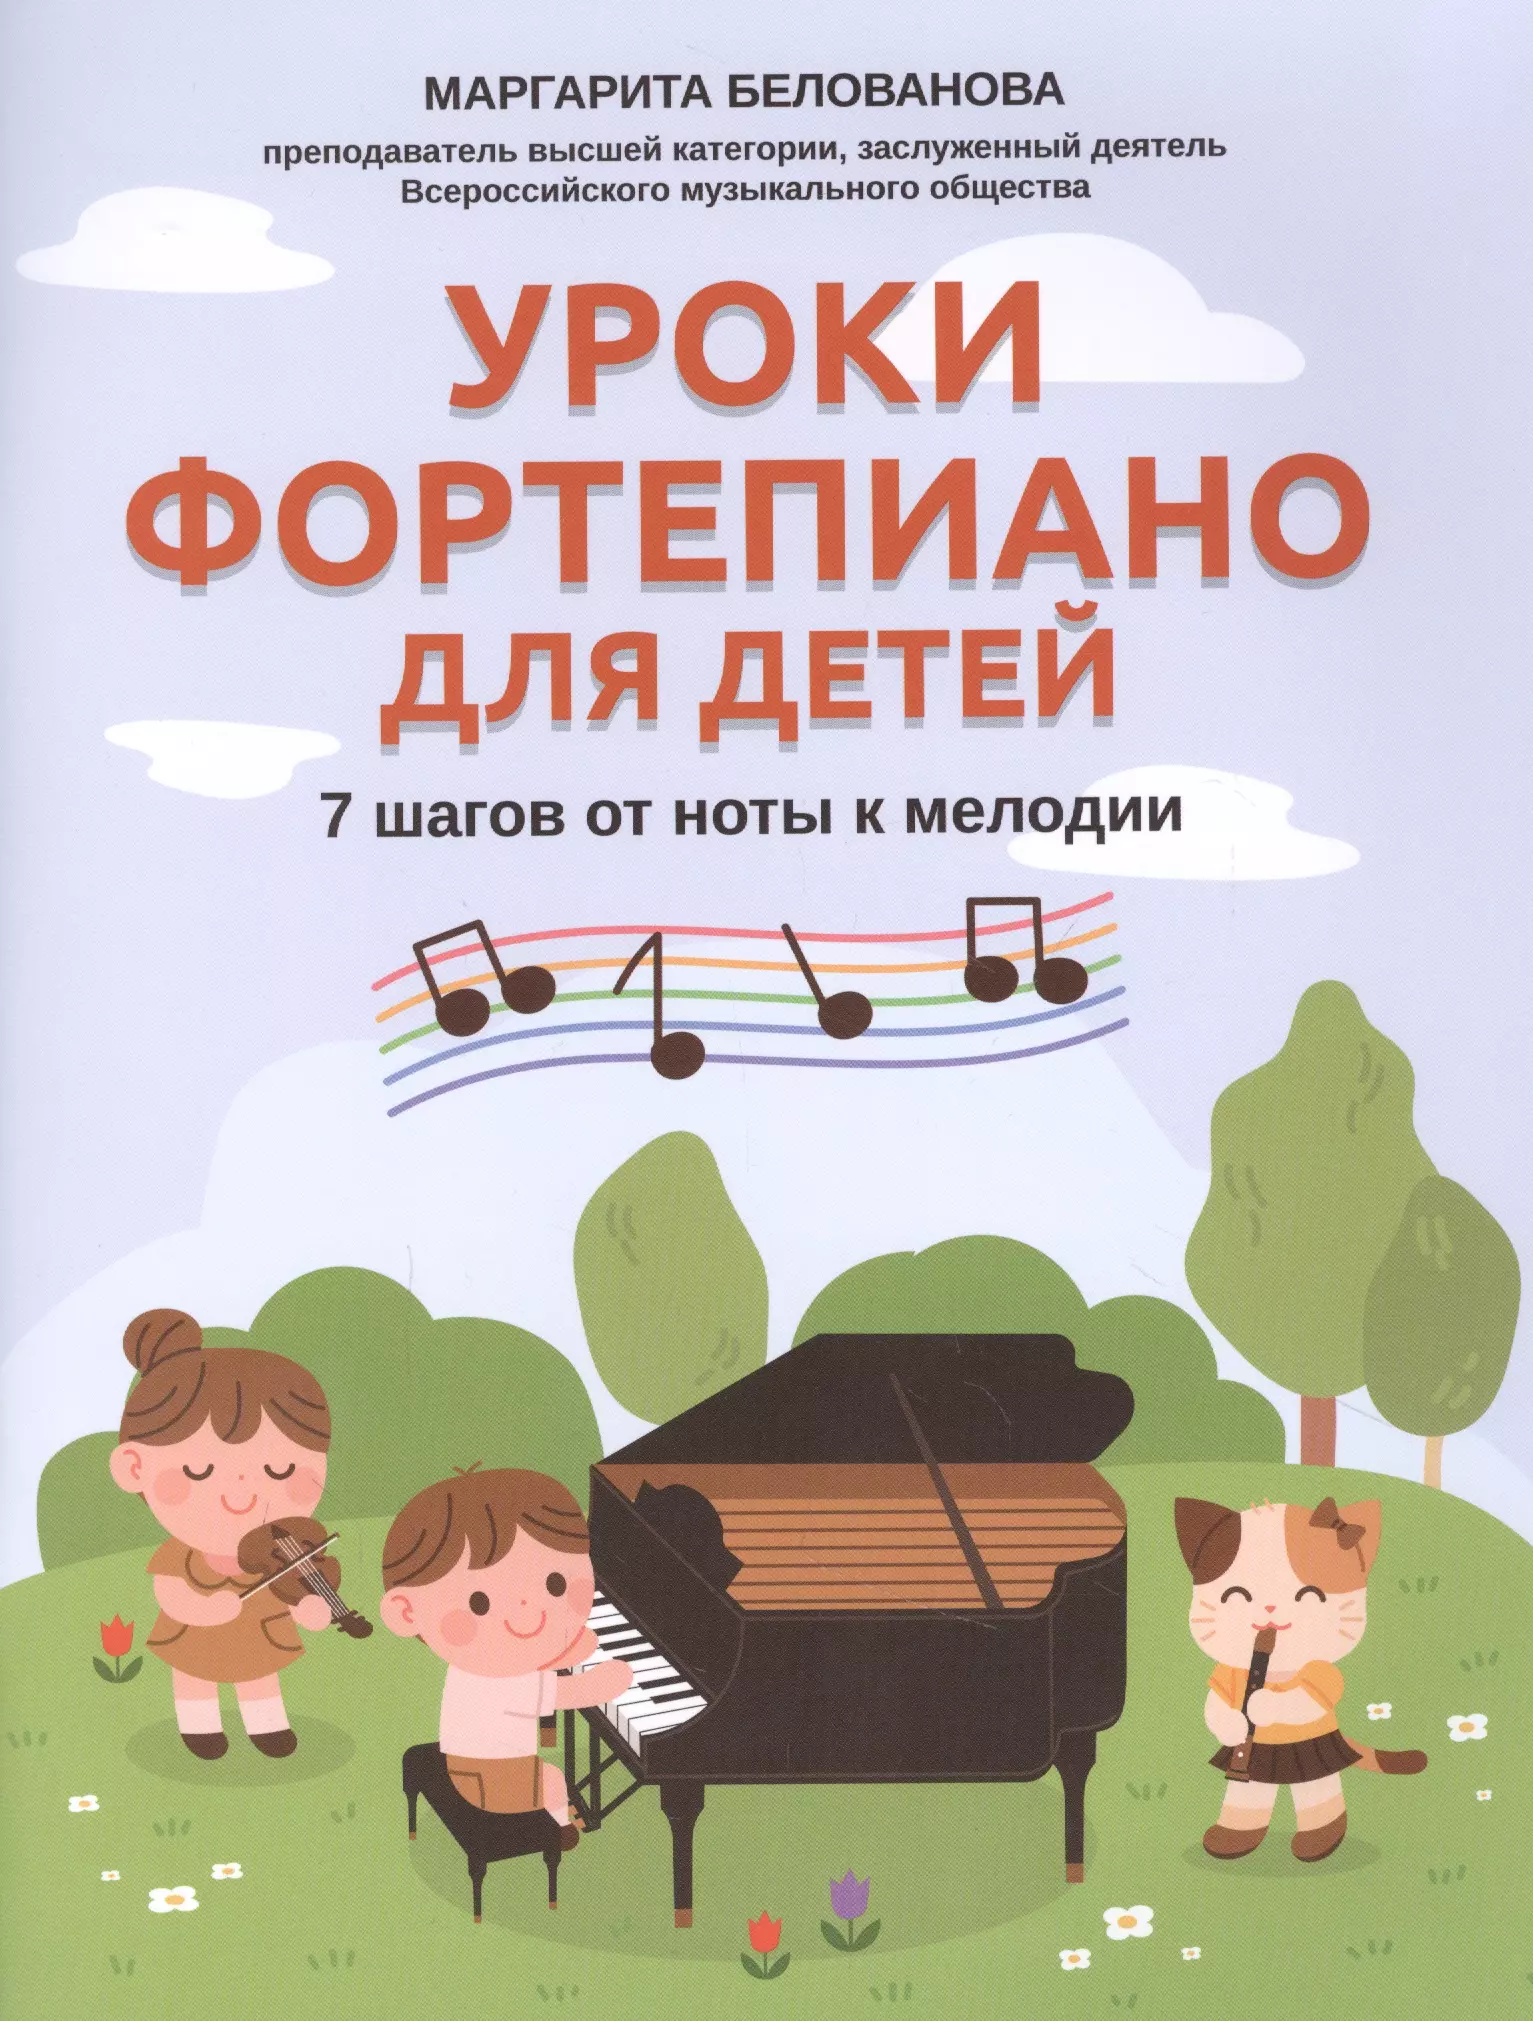 Белованова Маргарита Евгеньевна - Уроки фортепиано для детей: 7 шагов от ноты к мелодии